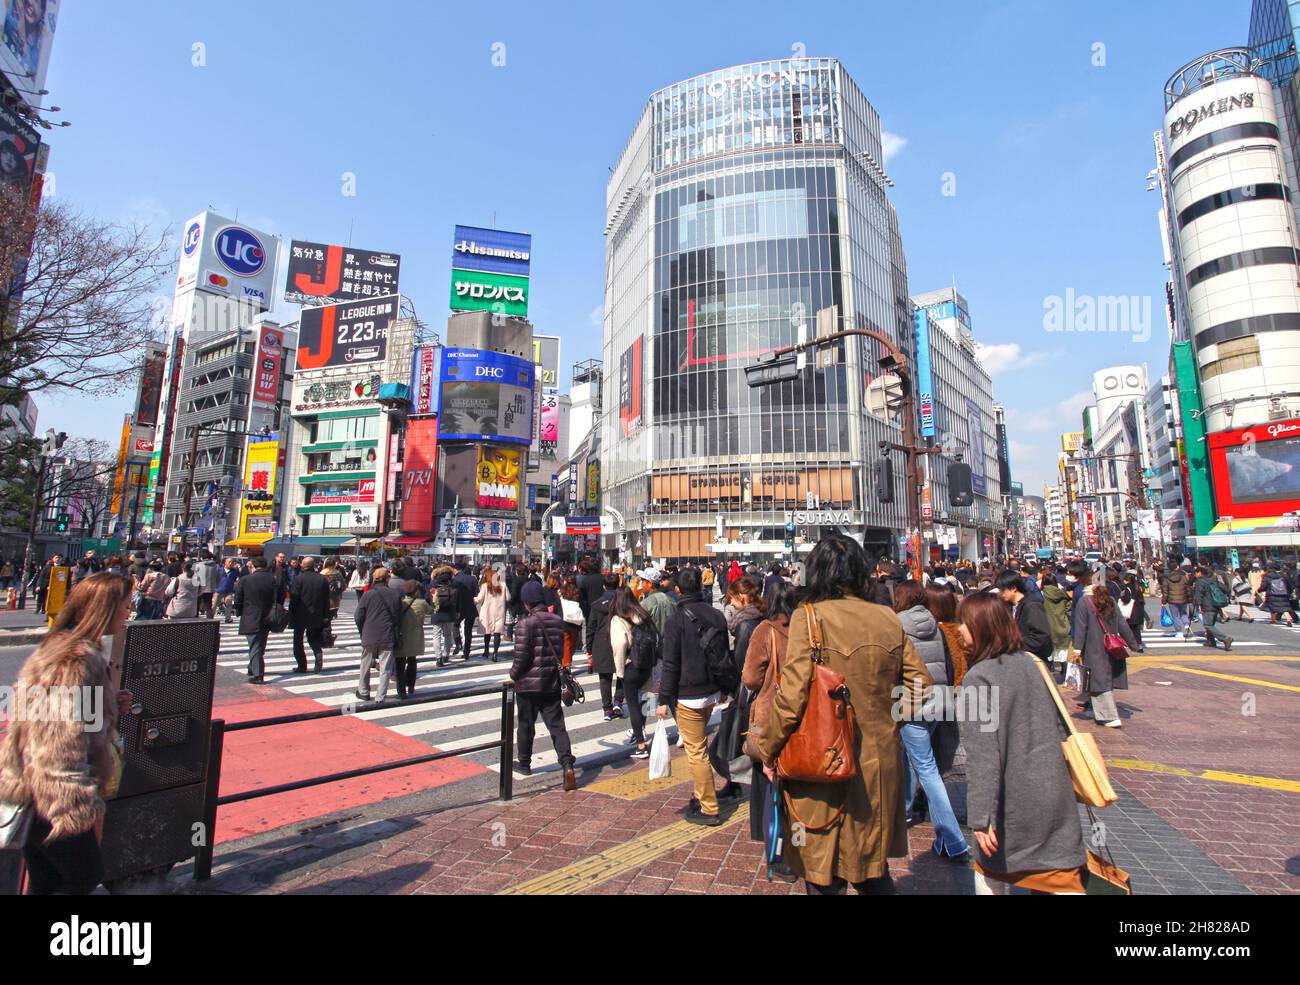 Shibuya Crossing auch bekannt als Shibuya Intersection und Shibuya Scramble in Tokio mit vielen Menschen, die die Kreuzung an einem sonnigen Tag überqueren. Stockfoto